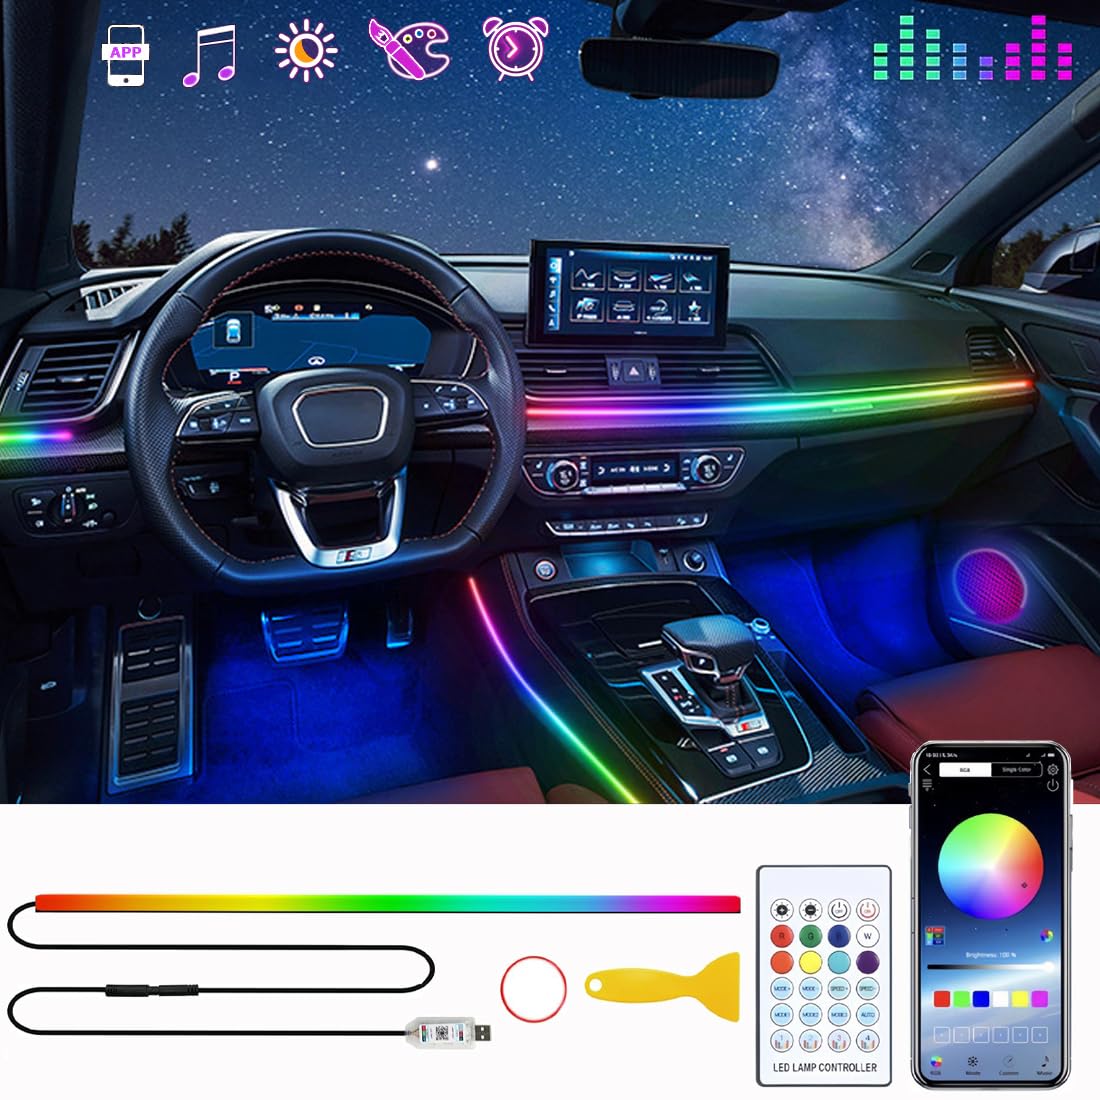 Auto LED Innenlichtstreifen,Acryl Innenraum LED Lichtstreifen,Auto Atmosphärenlichter,Auto LED Lichter,Auto Innenraum Umgebungslichter,Innen RGB Lichter,APP-Steuerung Musiksynchronisation. von Minsezhi